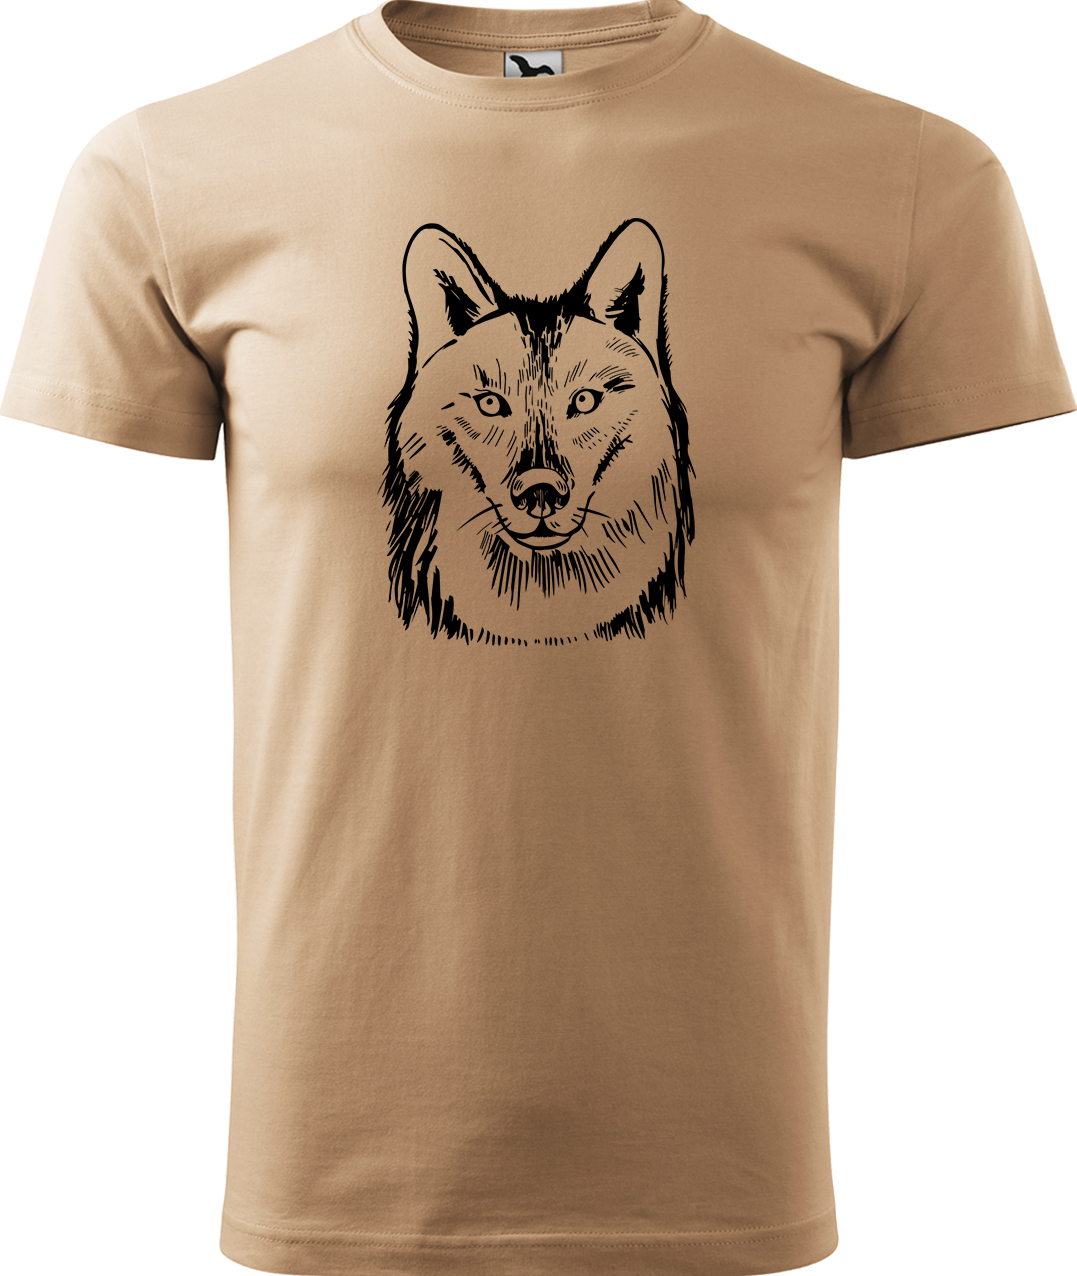 Pánské tričko s vlkem - Kresba vlka Velikost: XL, Barva: Písková (08), Střih: pánský